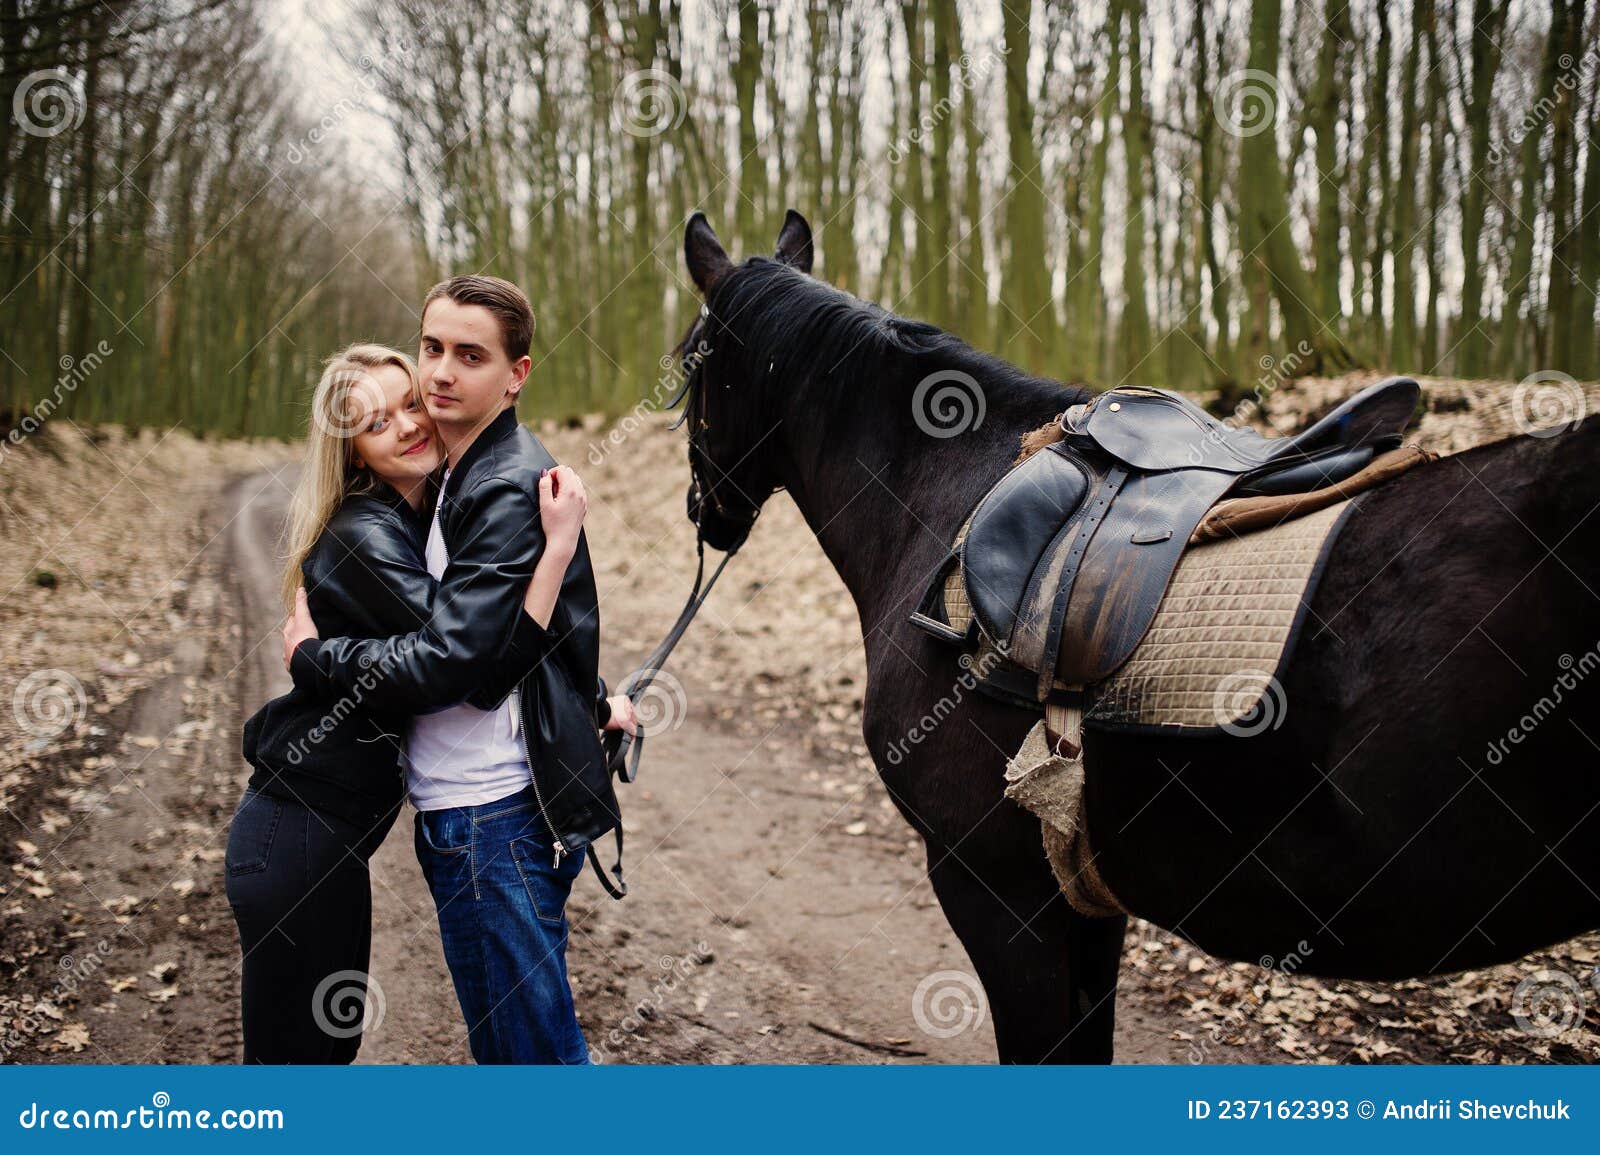 Young Stylish Couple Riding on Horses Stock Image - Image of girl ...